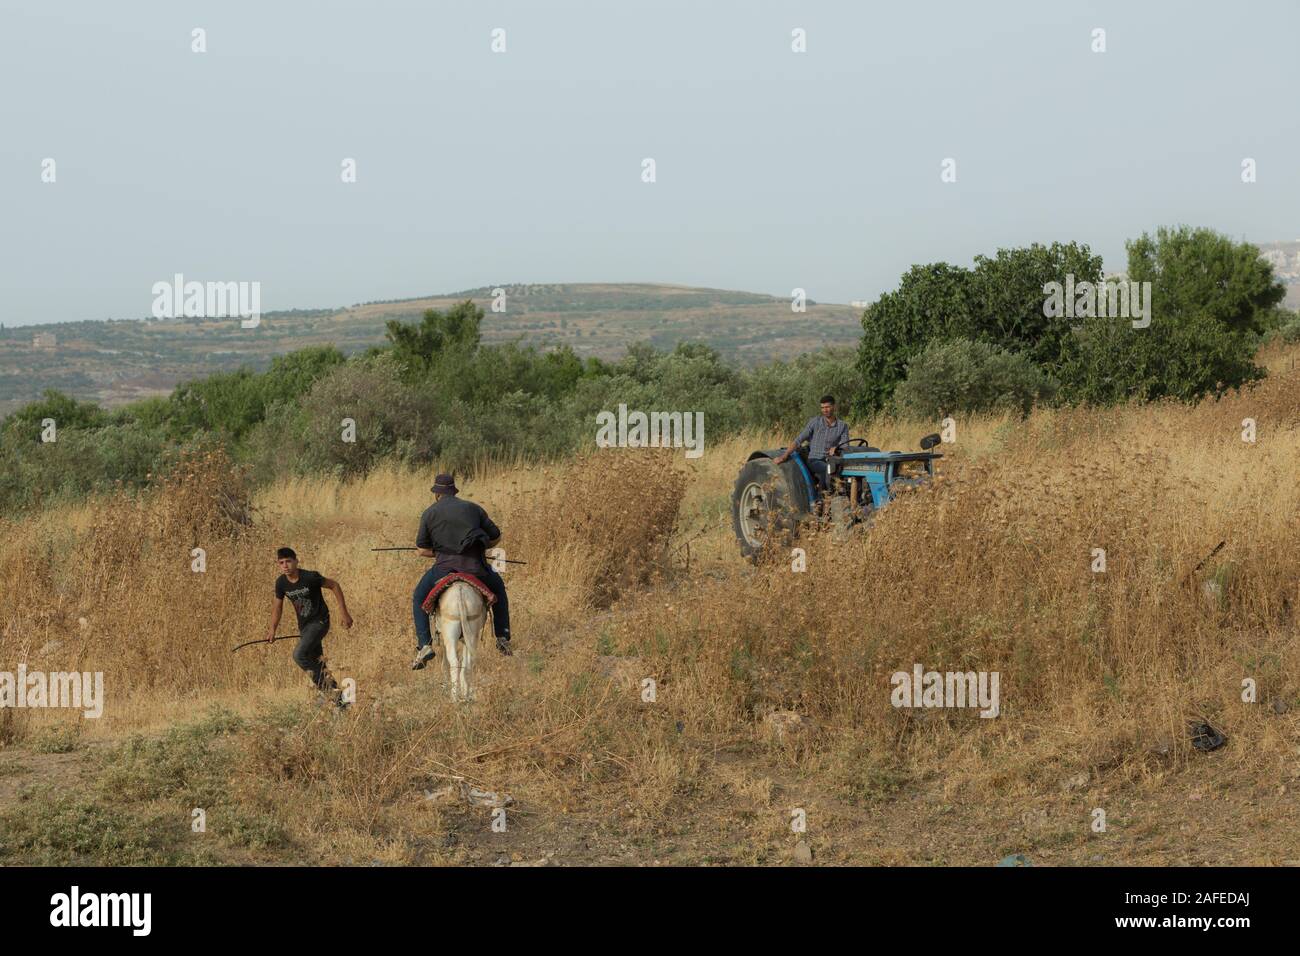 Los residentes palestinos en un campo pedregoso infestadas con hierbas secas y espinas fotografiado en la Ribera Occidental cerca de Gidi Junction Palestina / Israel Foto de stock